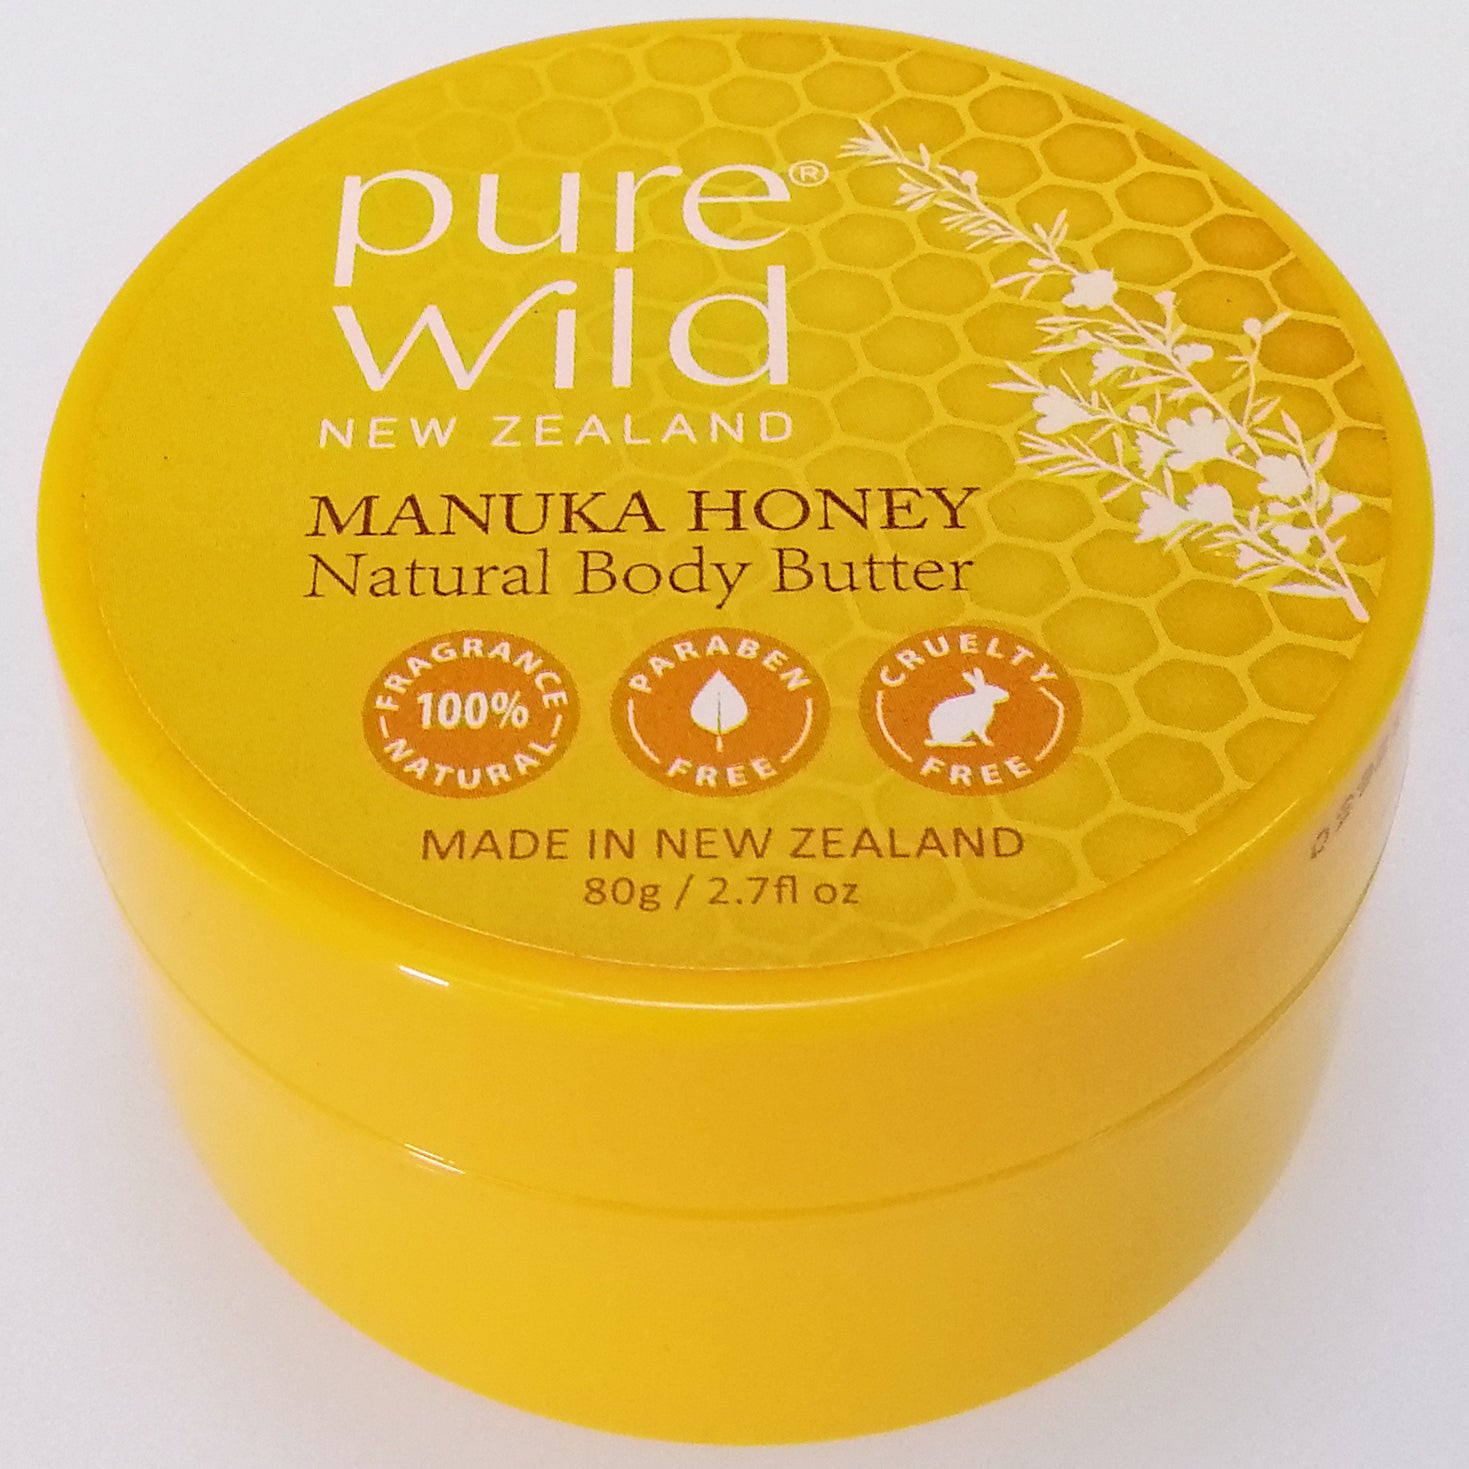 Purewild Natural Body Butter Moisturiser - Manuka Honey